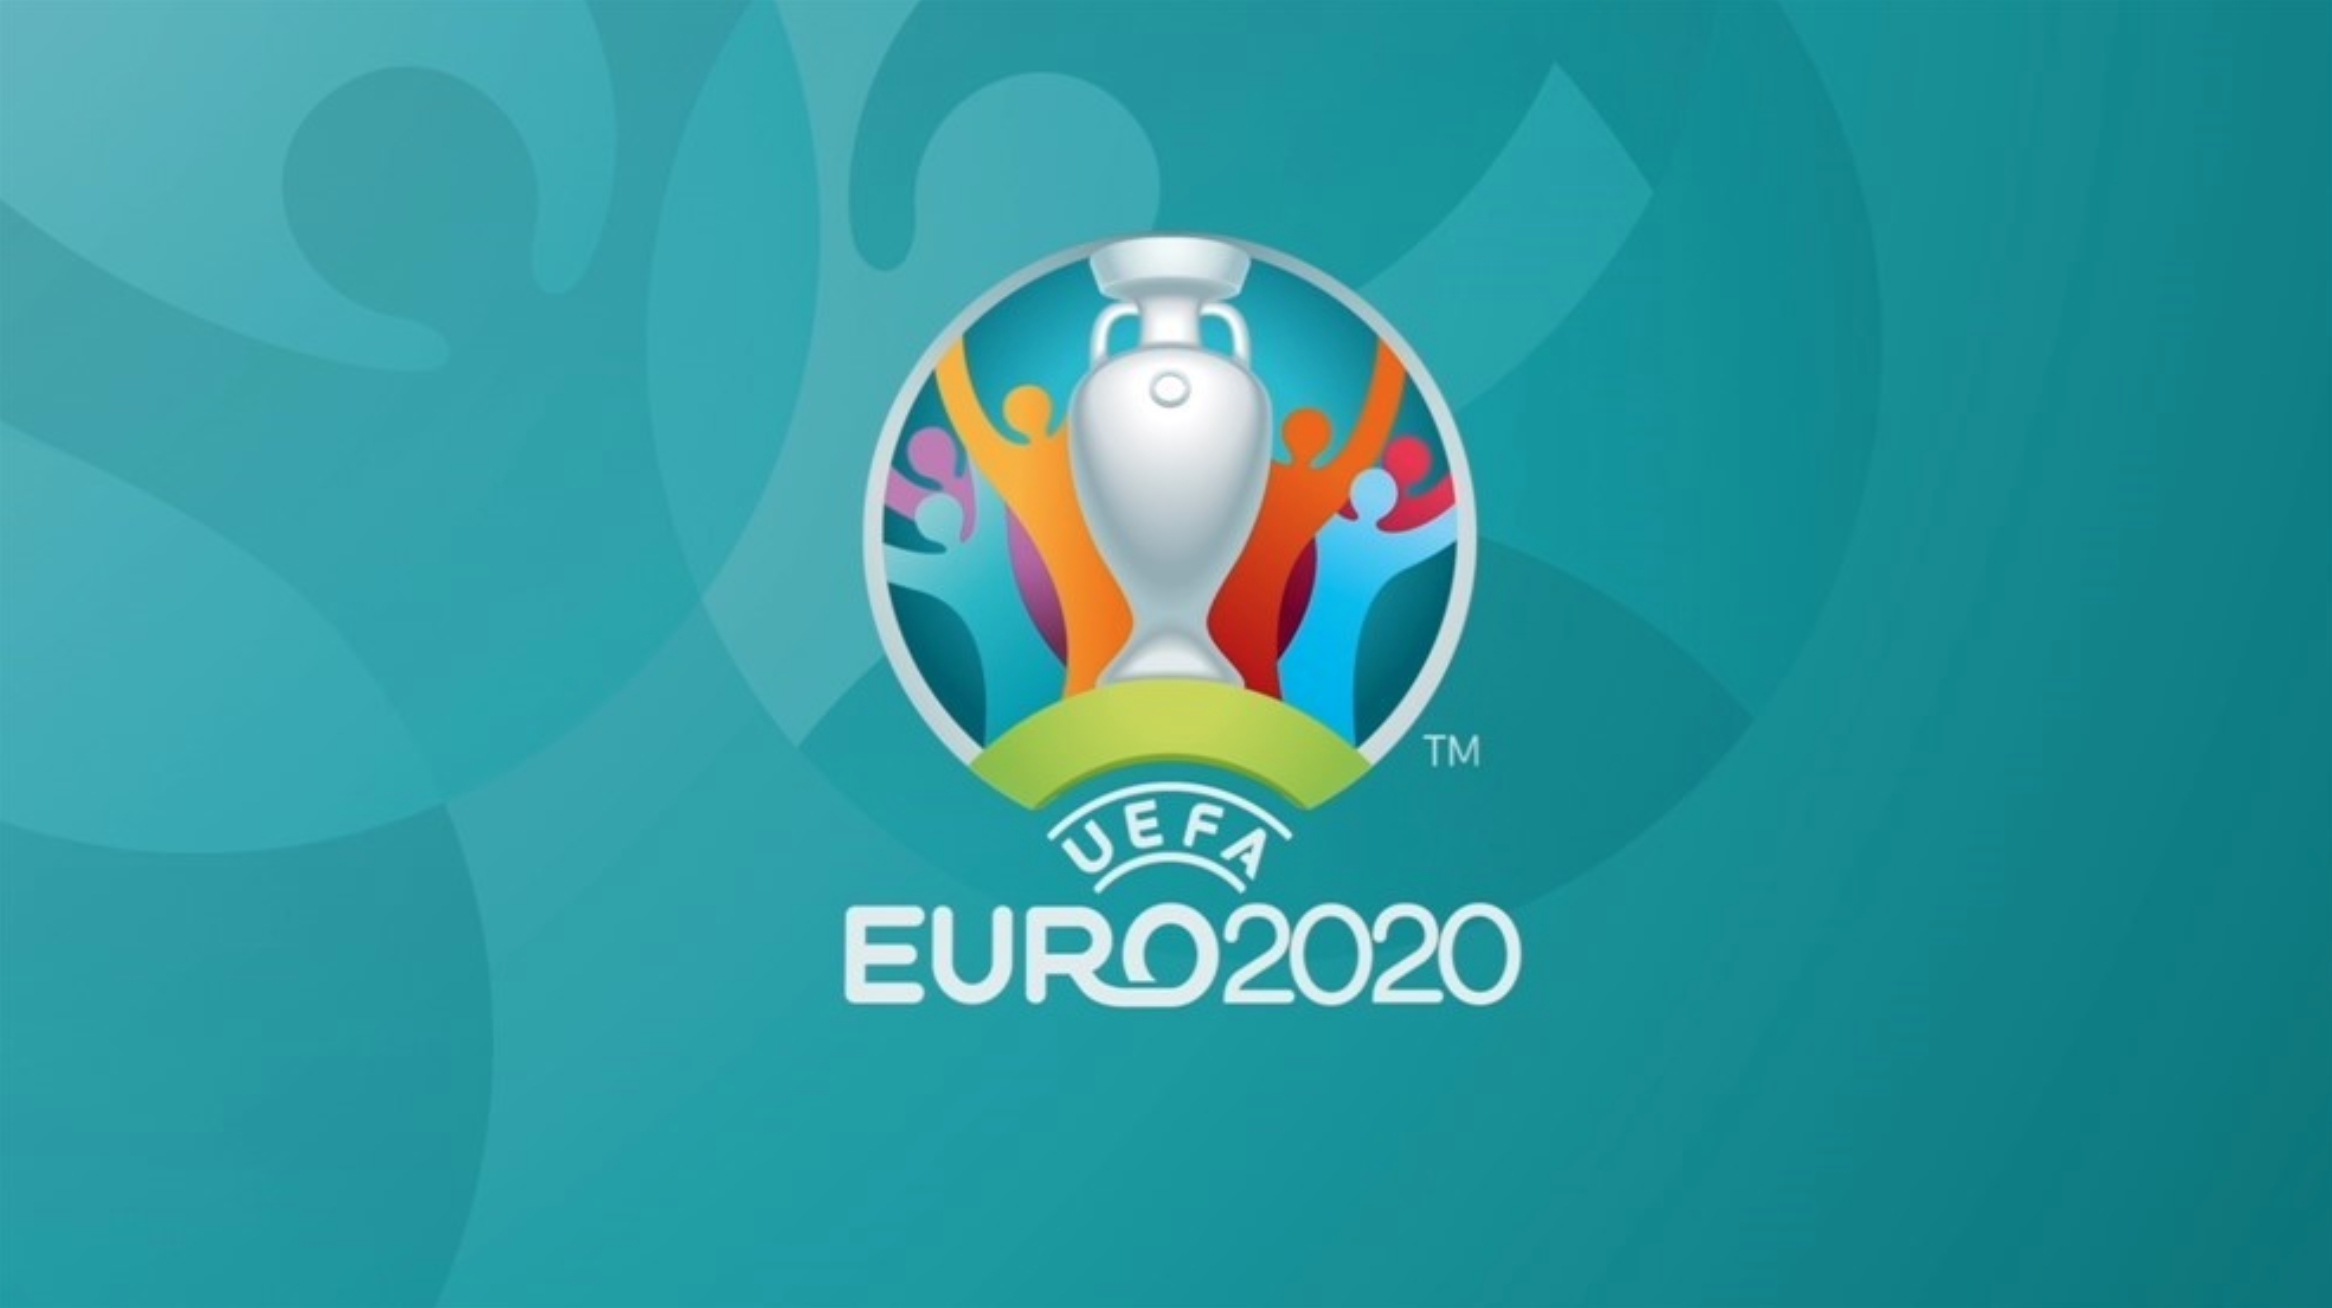 UEFA_Euro2020